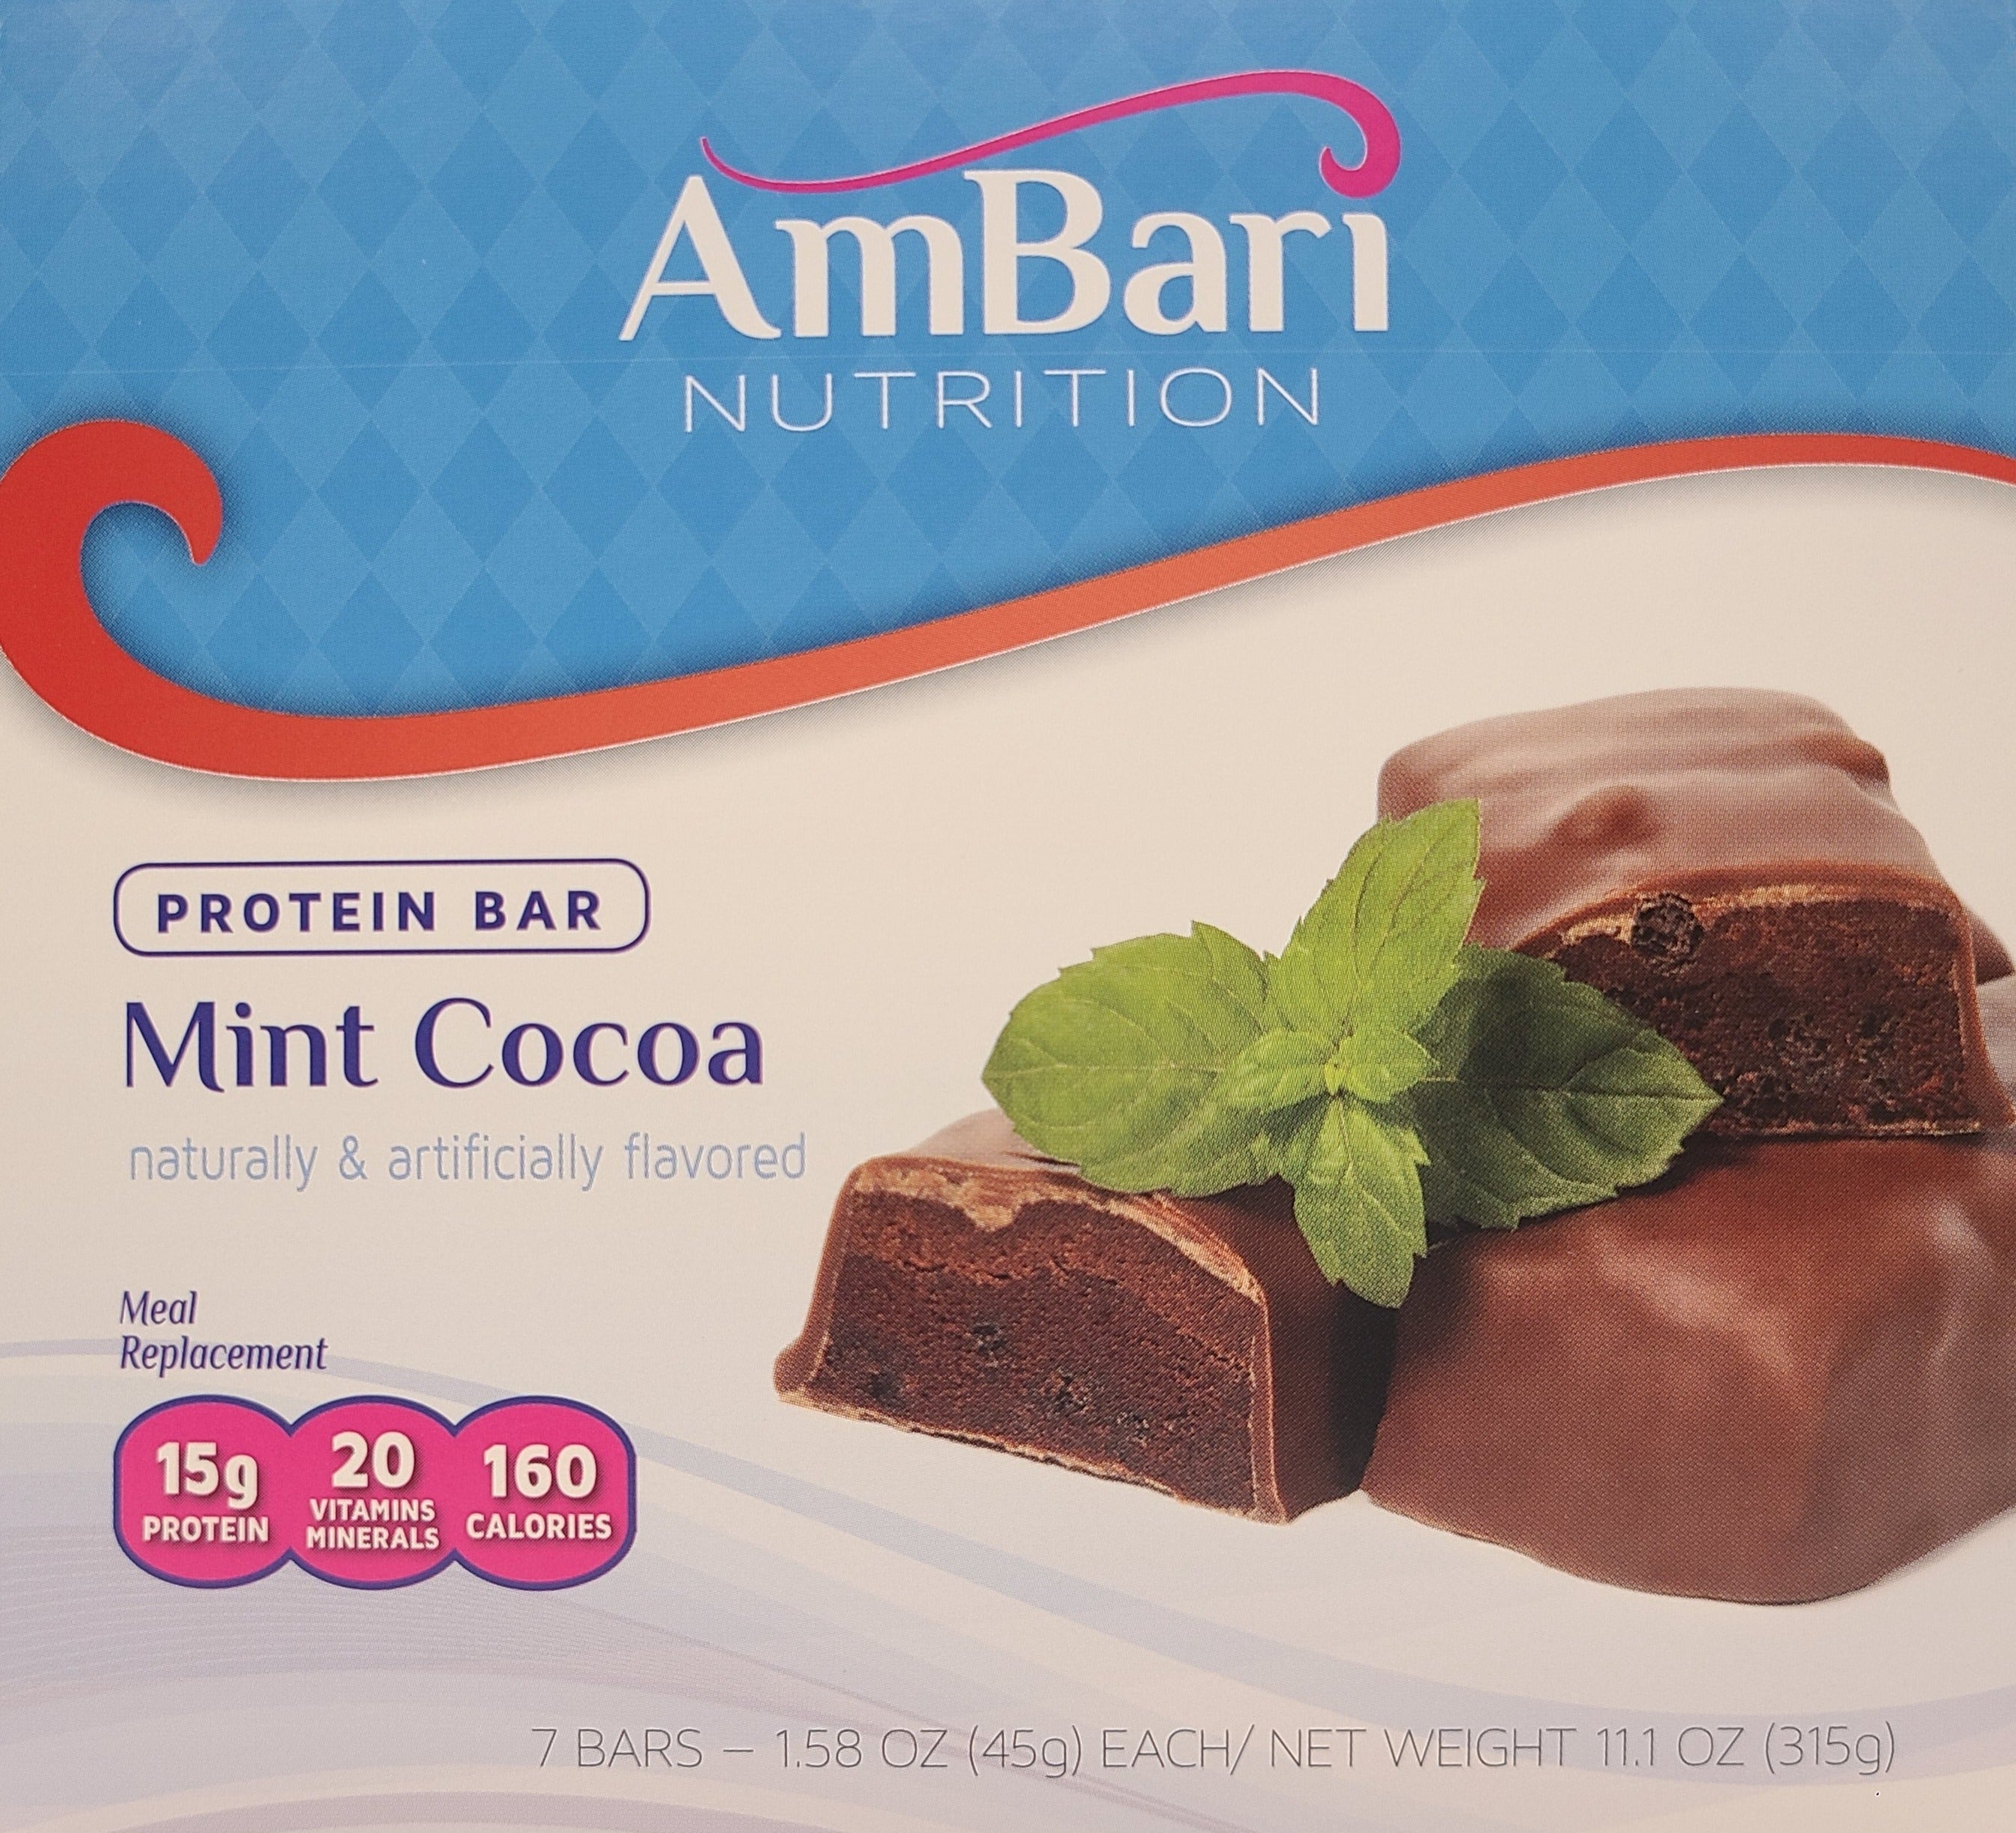 Mint Cocoa Bars